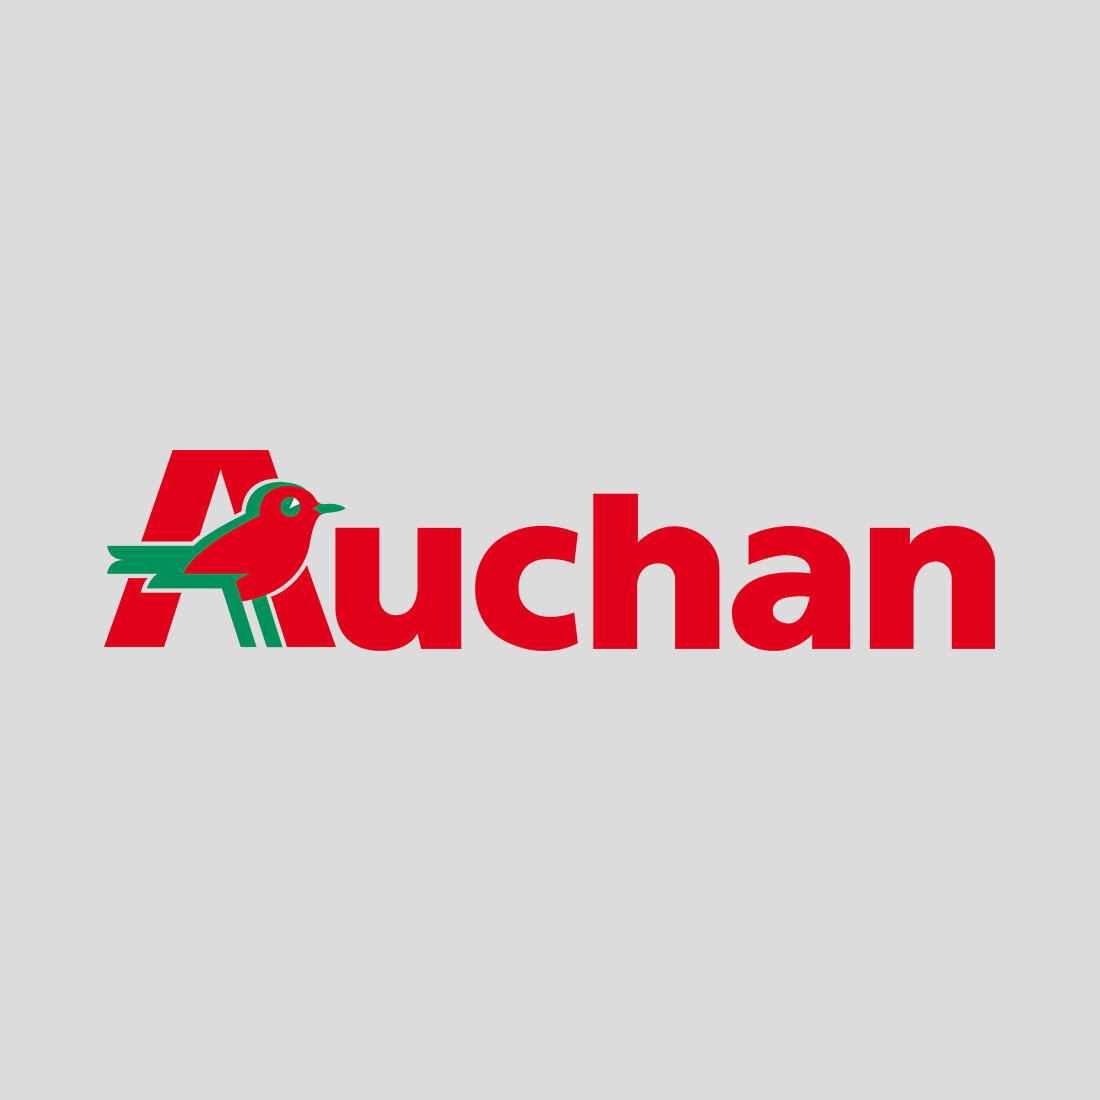 Auchan logo. Ашан. Эмблема Auchan. Логотип Ашана картинка. Логотип Ашан на белом фоне.